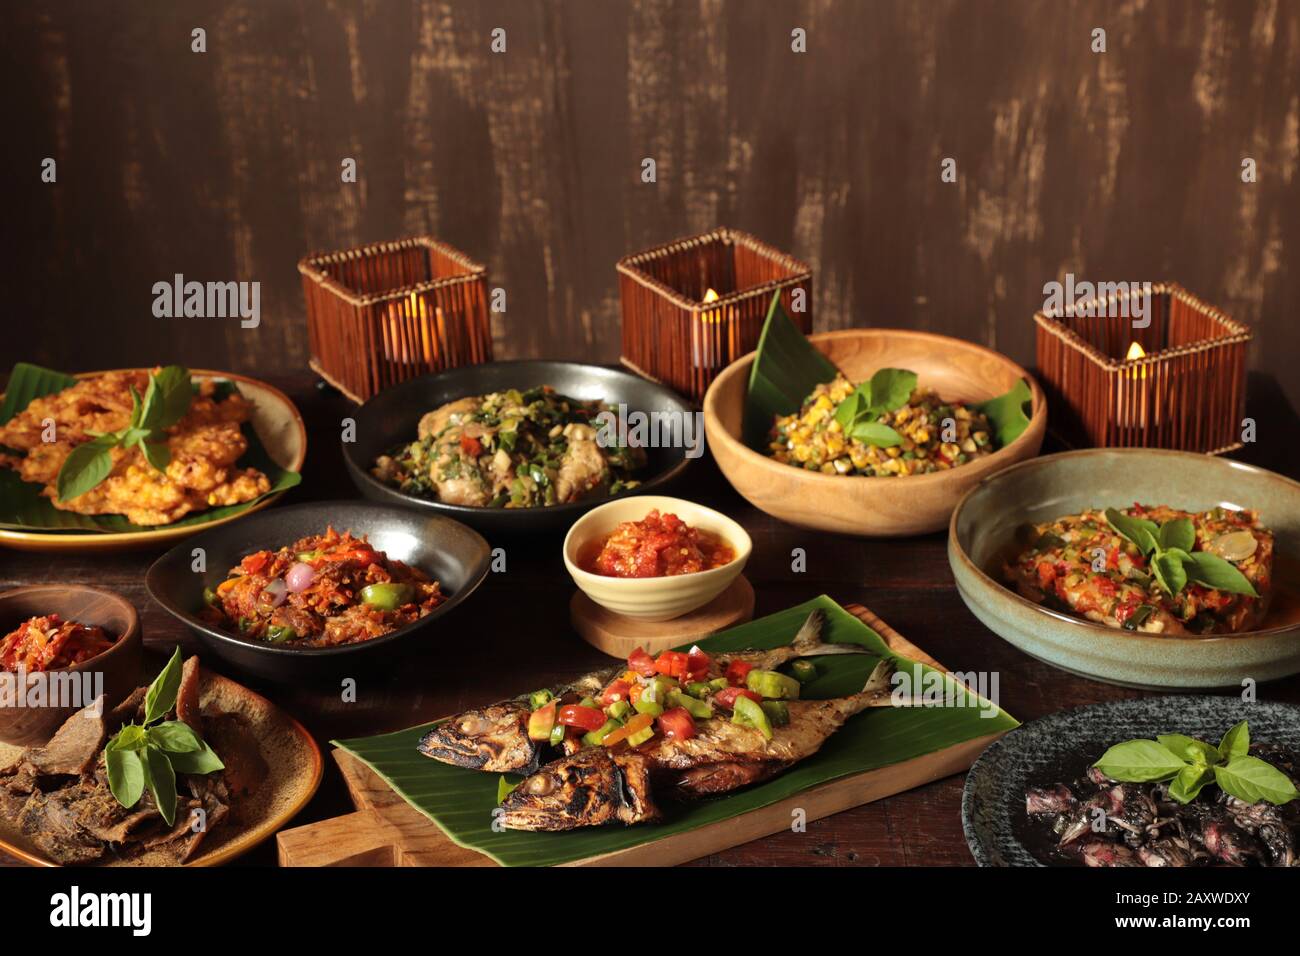 Minahasan Rijsttafel. Eine Auswahl an traditionellen Gerichten aus Manado, Minahasa. Stockfoto